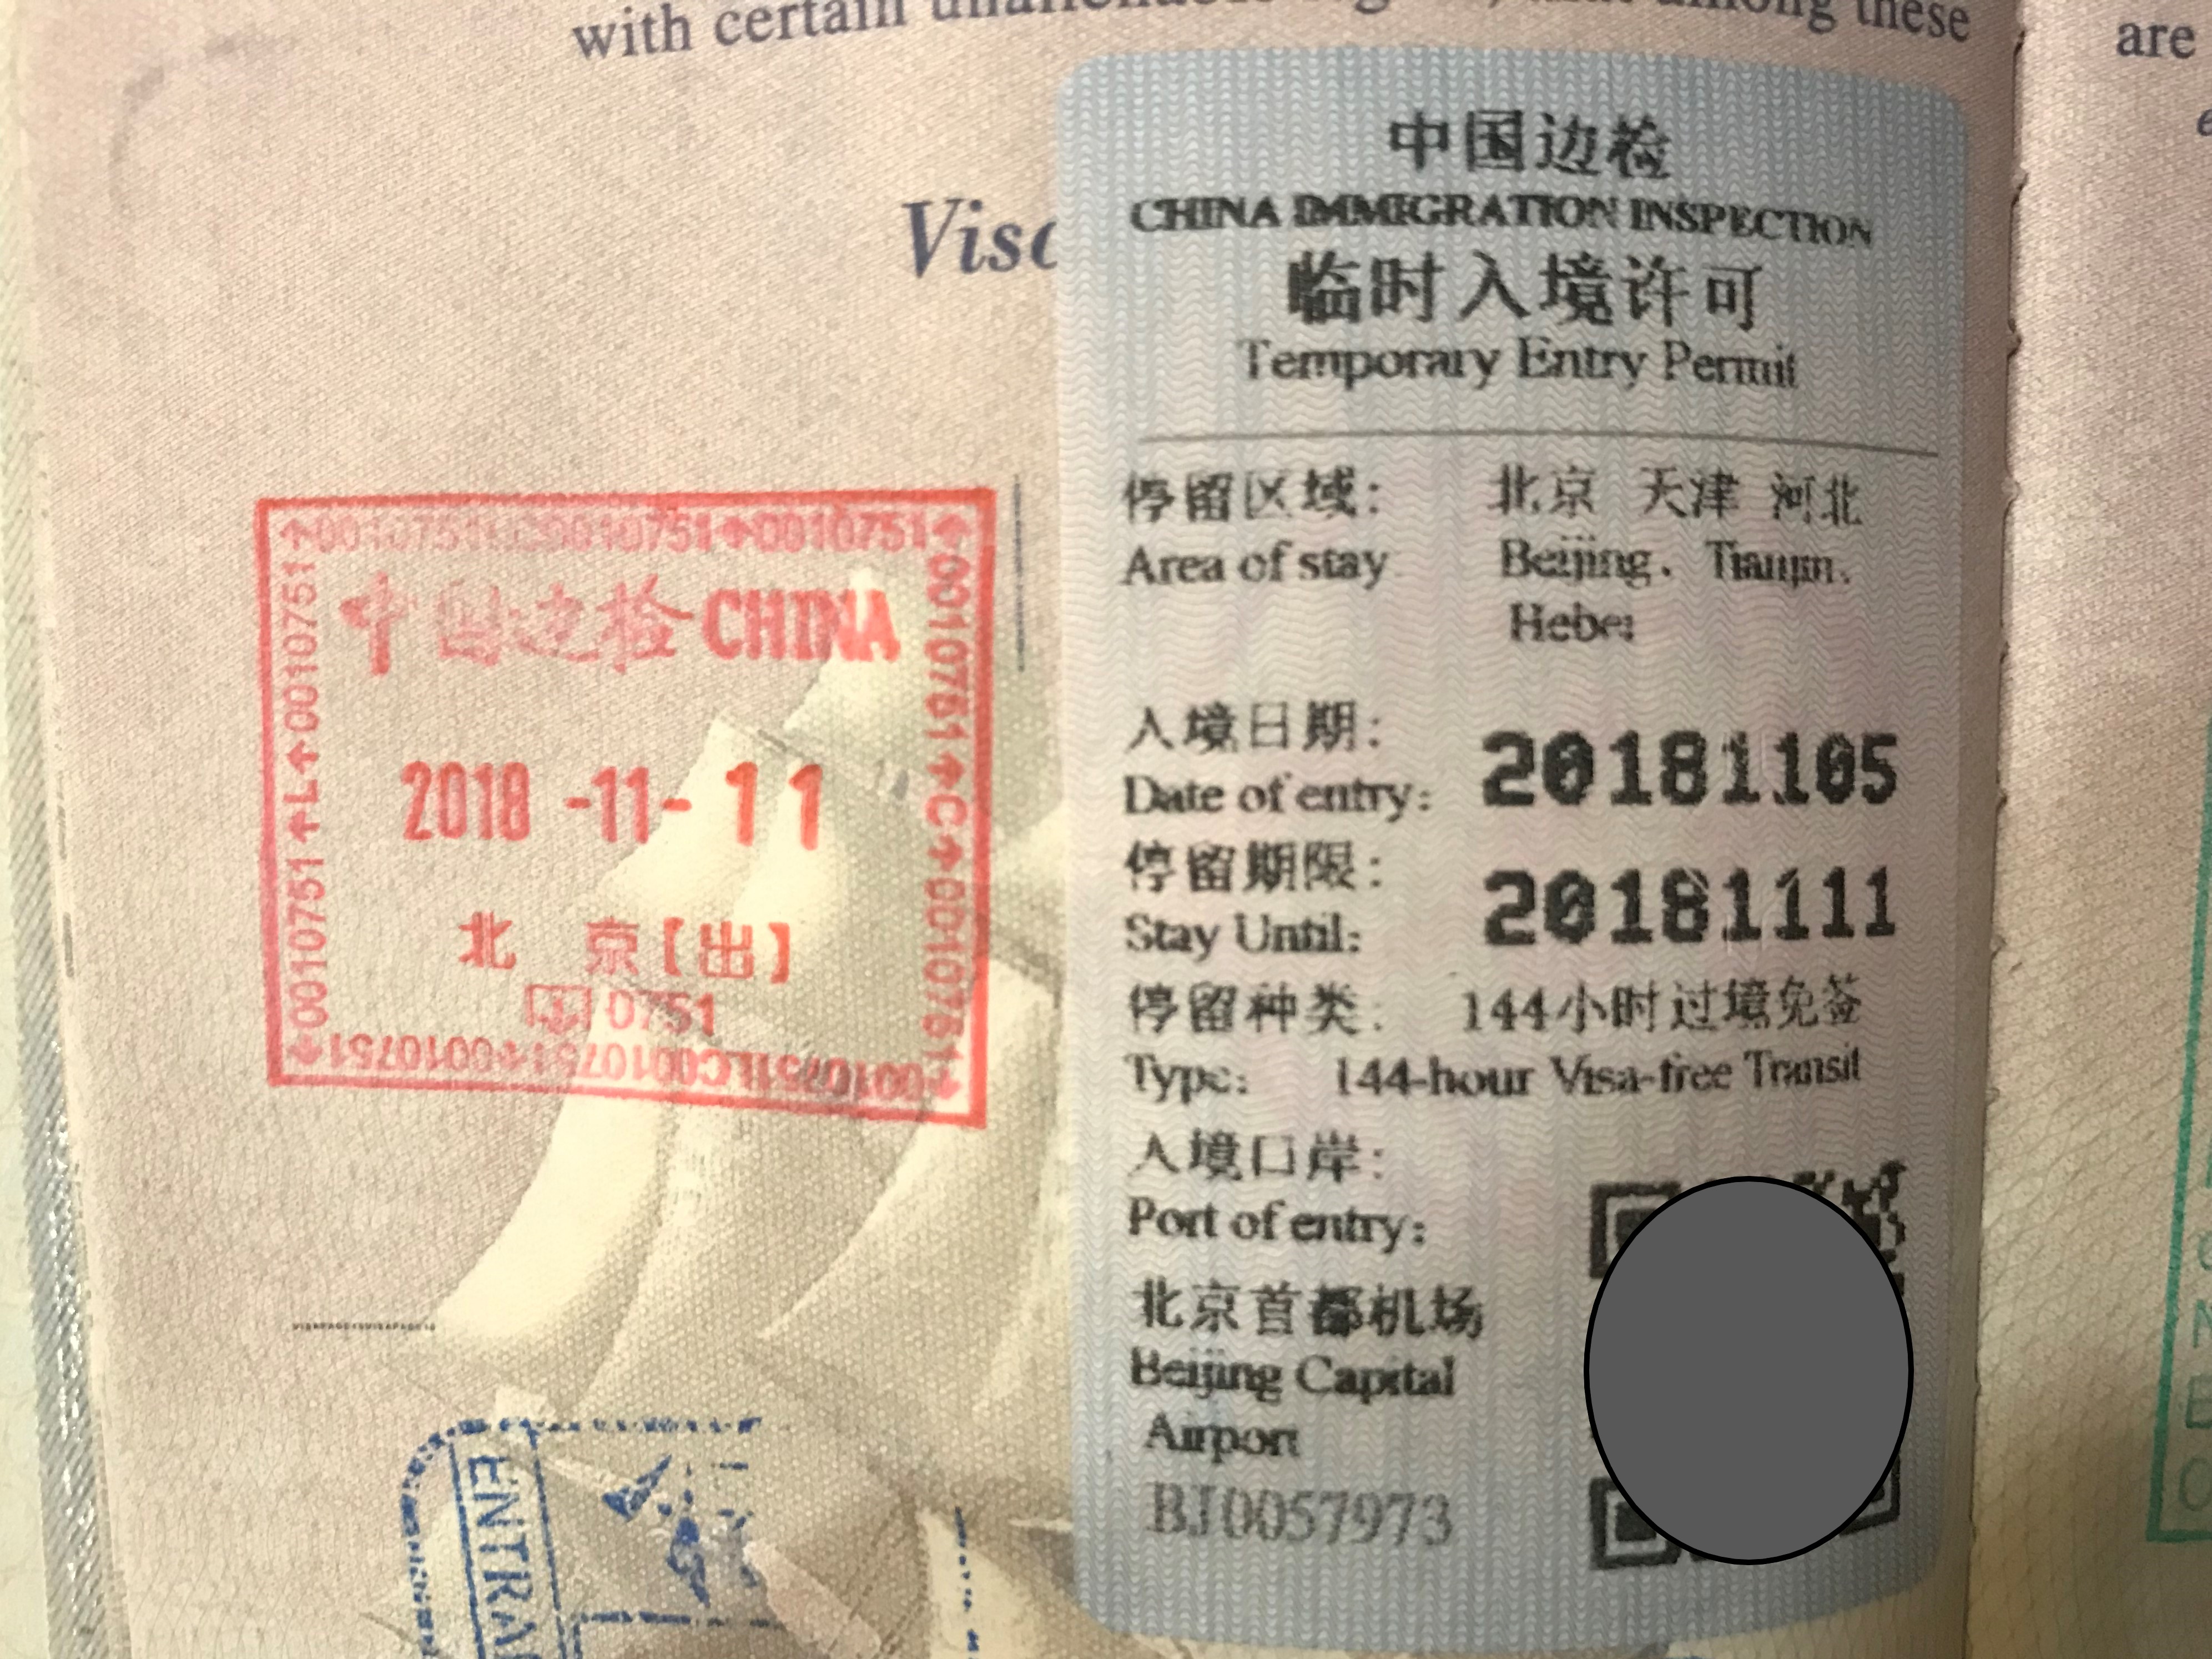 beijing transit without visa passport